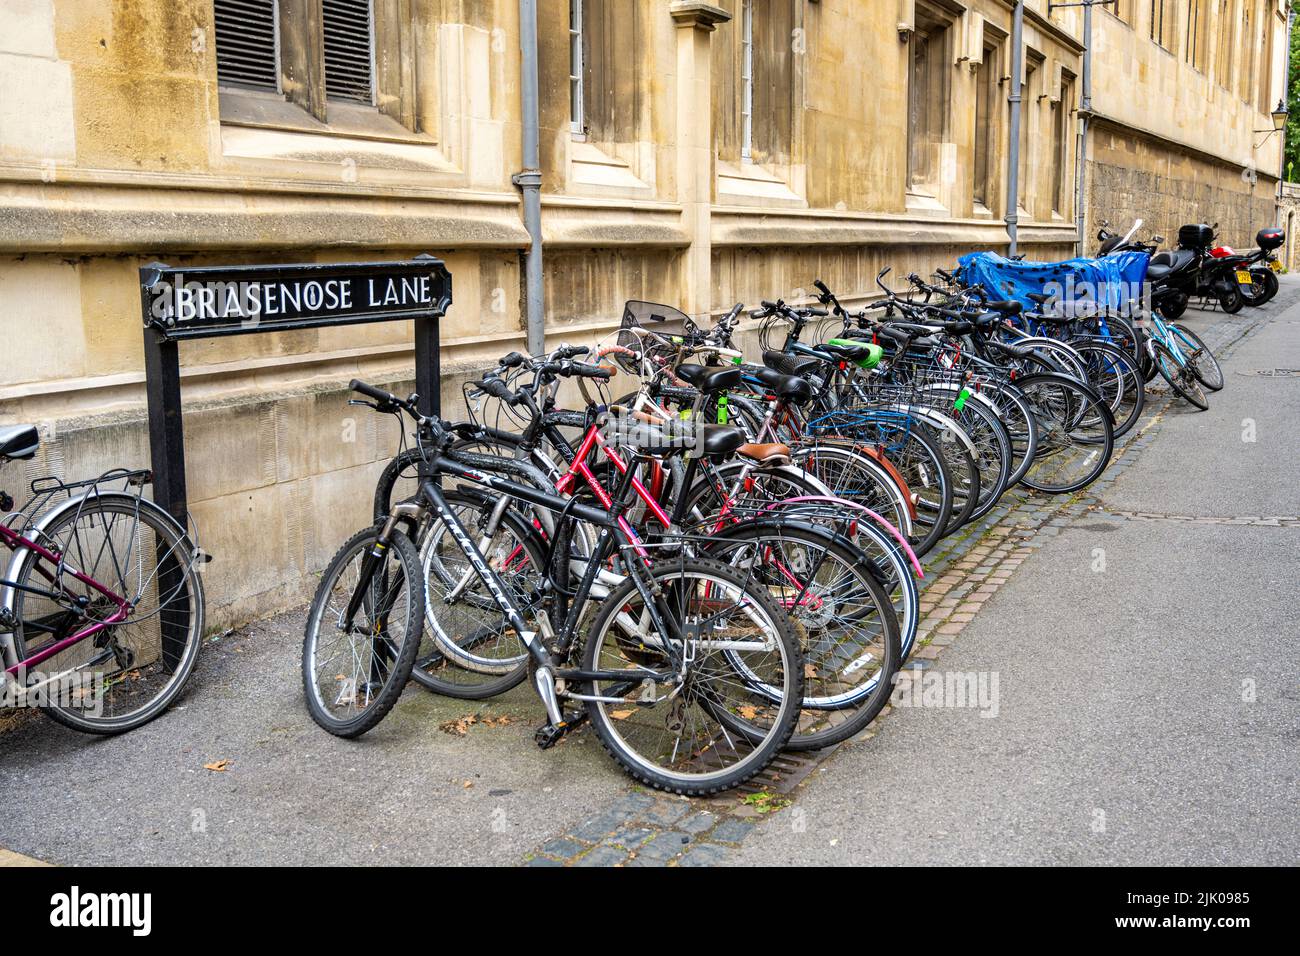 Reihe von Fahrrädern Fahrräder Fahrräder Fahrräder in der Nähe brasenose Lane Straße Straßenschild Oxford England Großbritannien Stockfoto